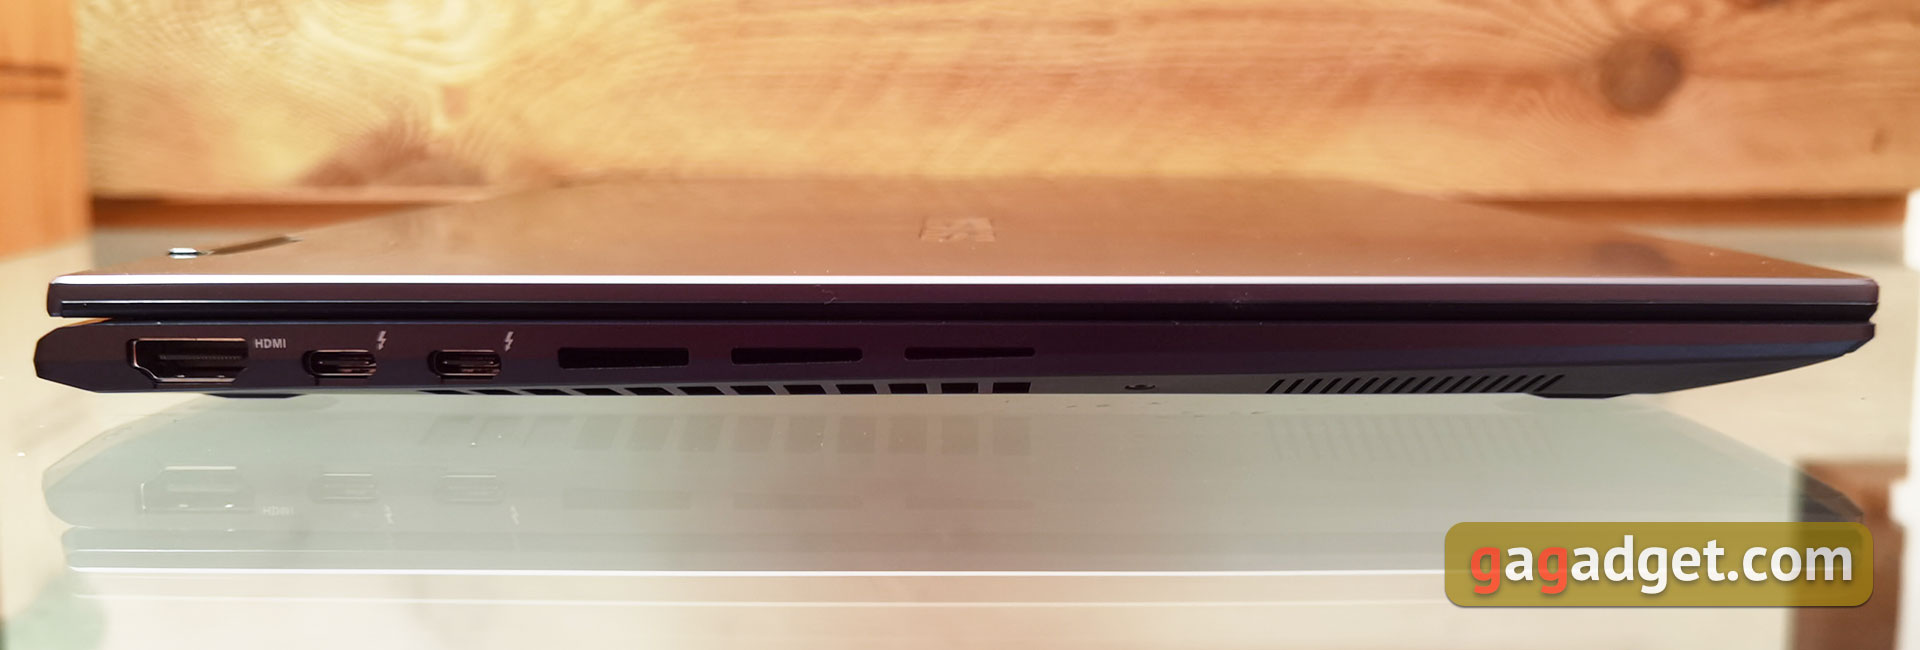 ASUS Zenbook 14 Flip OLED (UP5401E) Überblick: ein leistungsstarkes Ultrabook Transformer mit OLED-Bildschirm-13